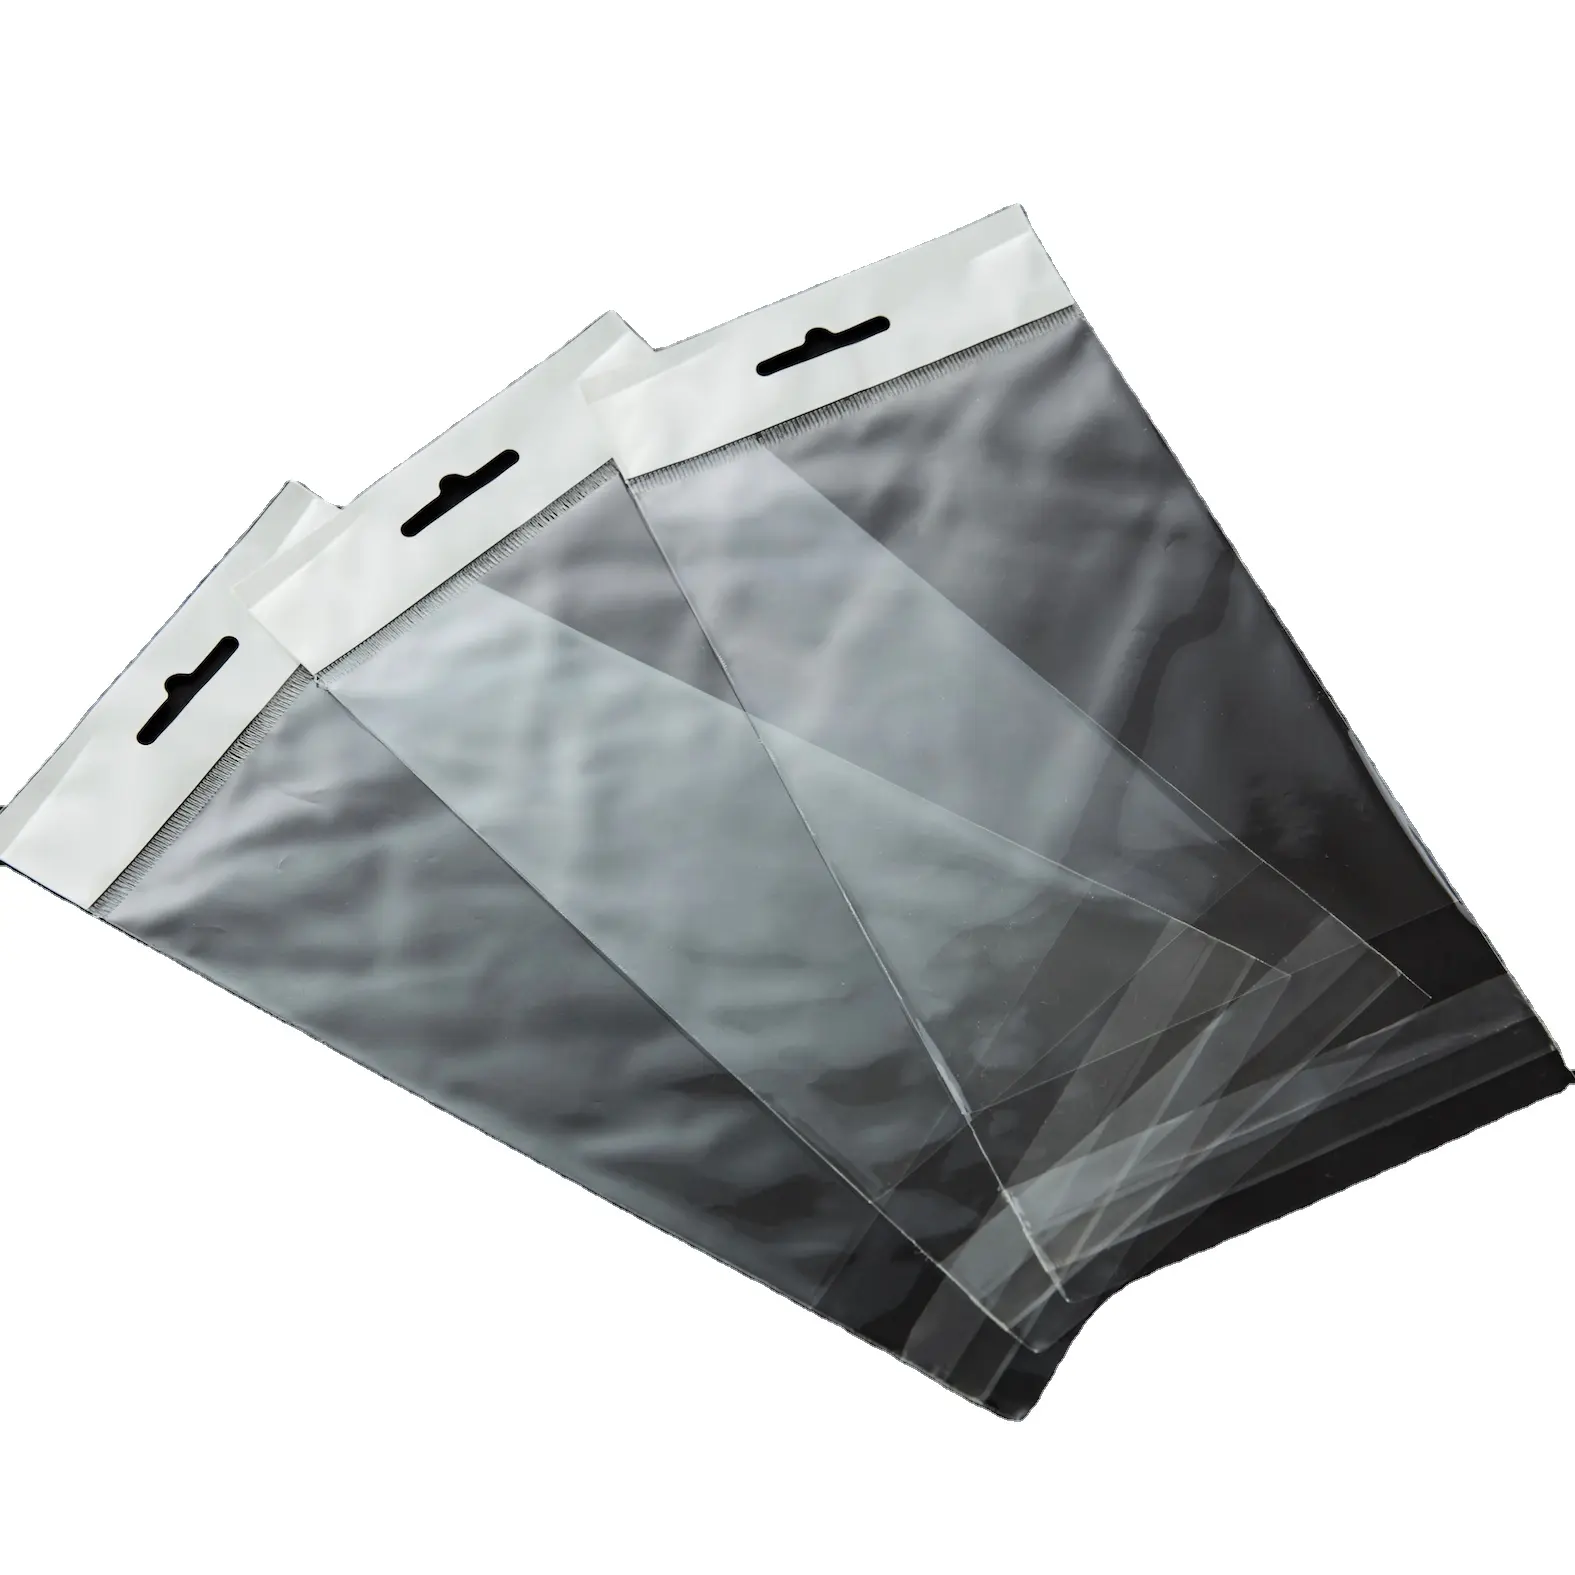 Bpb saco de vedação auto-adesivo transparente, venda quente